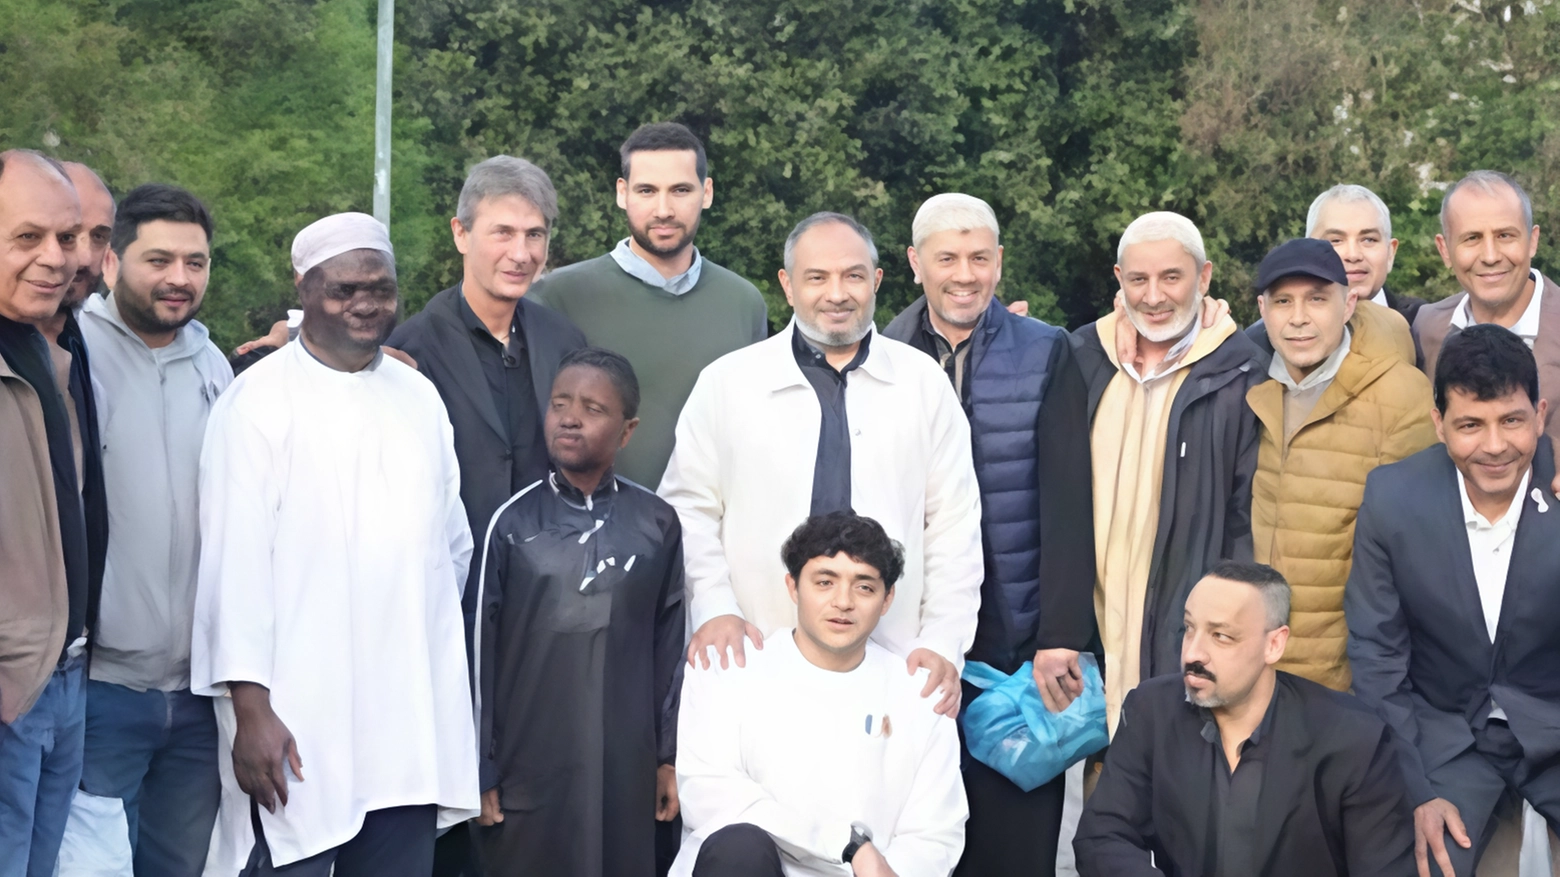 Mille alla cena comunitaria: "Musulmani e lodigiani uniti nel confronto di tradizioni"